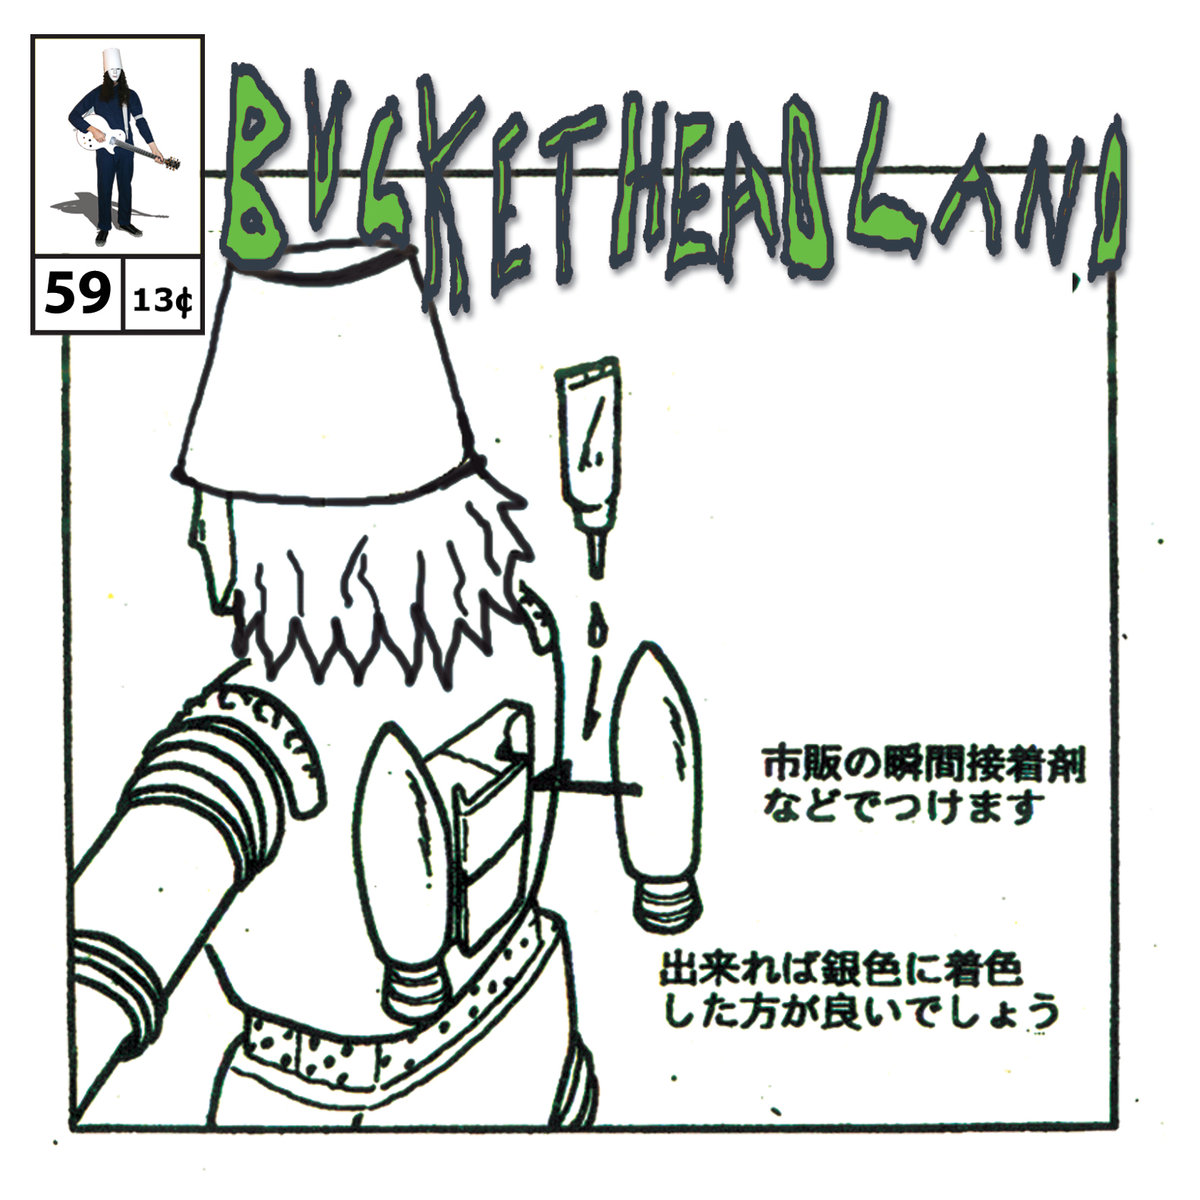 Buckethead - Pike 59: Ydrapoej (2014)